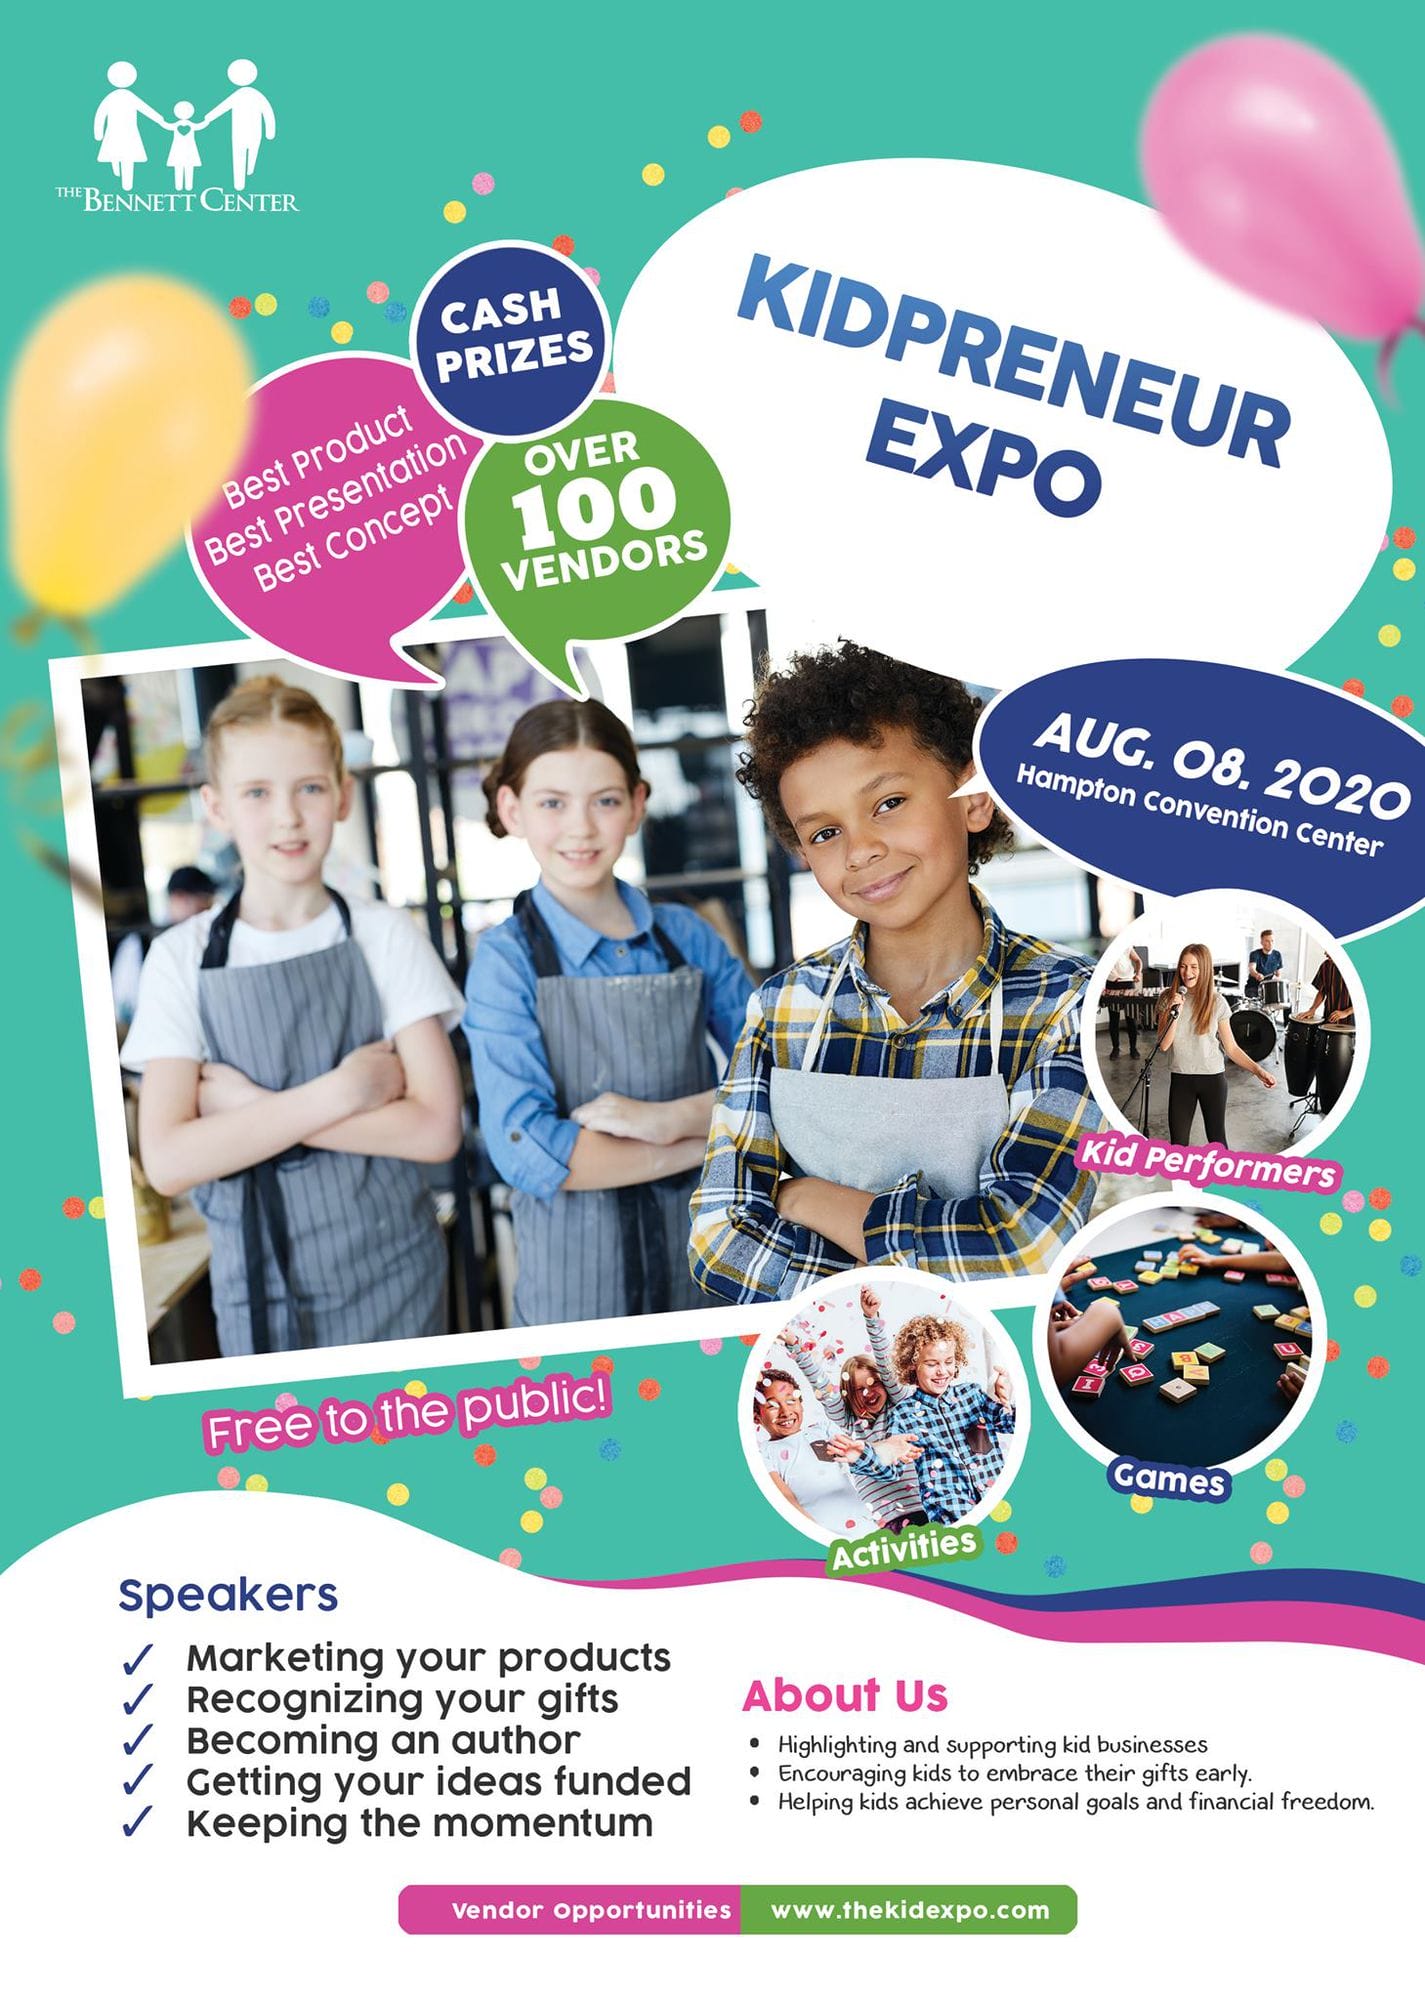 Kidpreneur Expo 2020